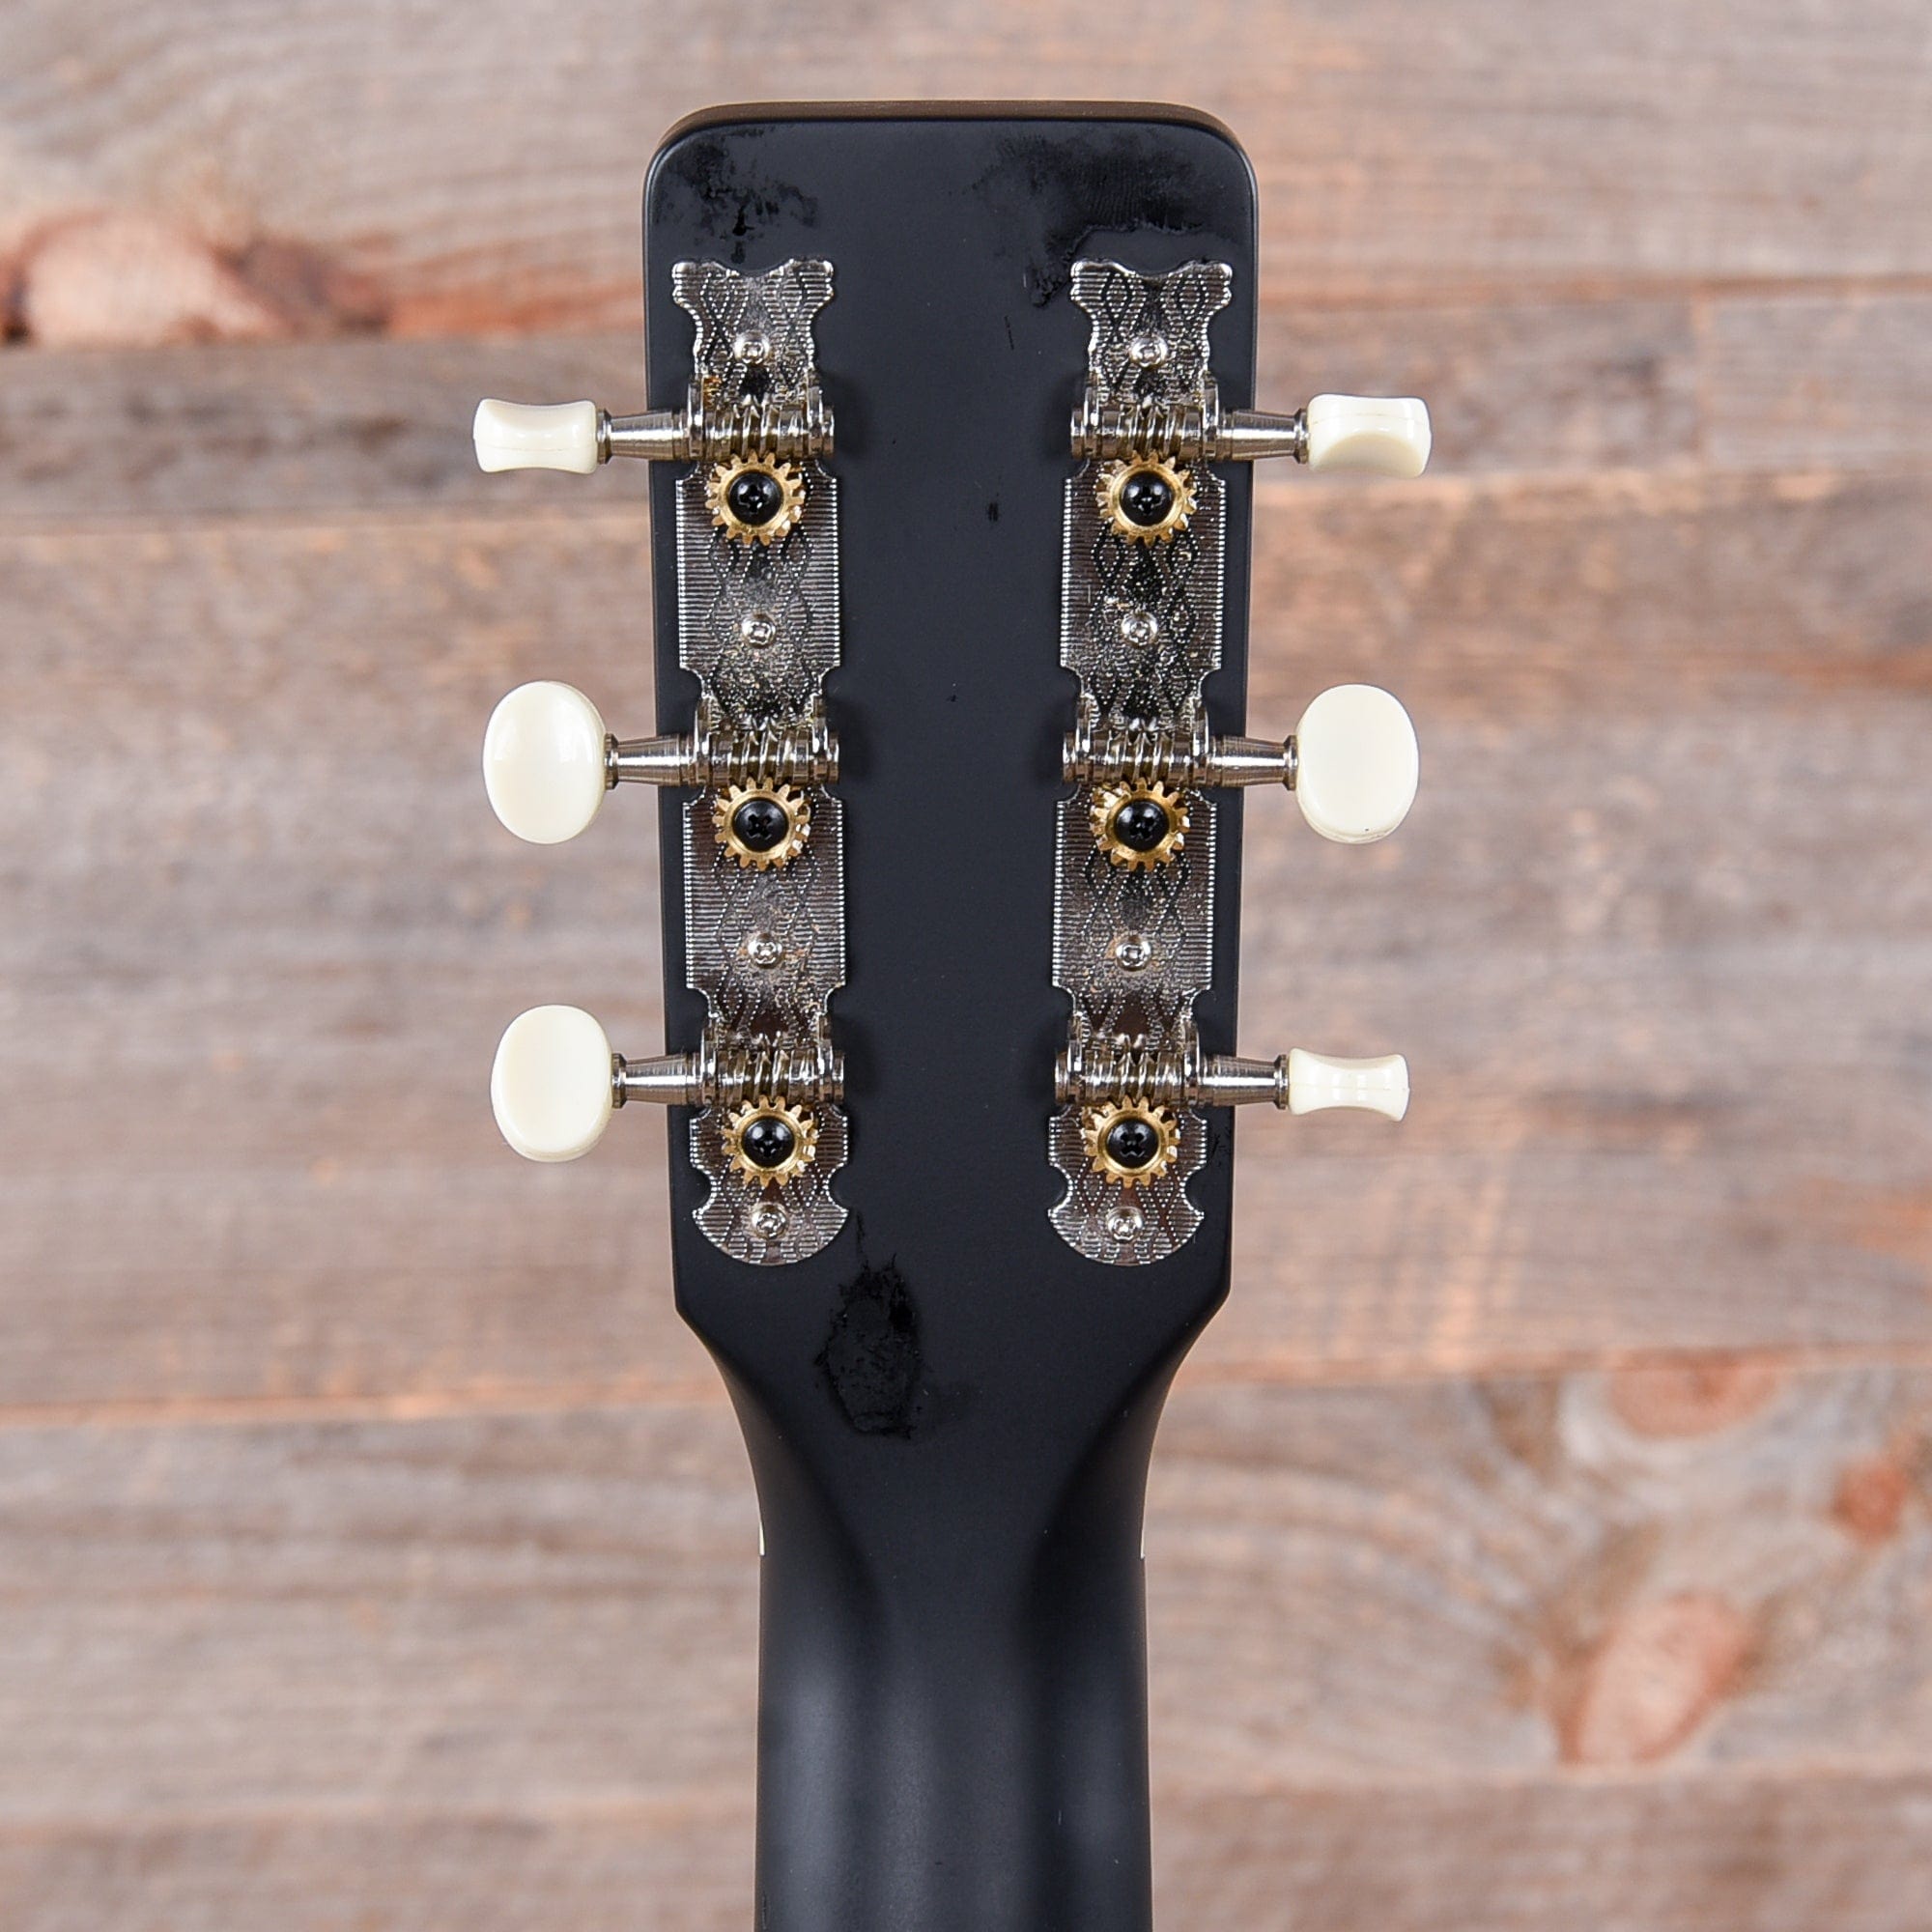 Gretsch Jim Dandy Flat Top Acoustic - 2 Tone Sunburst Acoustic Guitars / Parlor